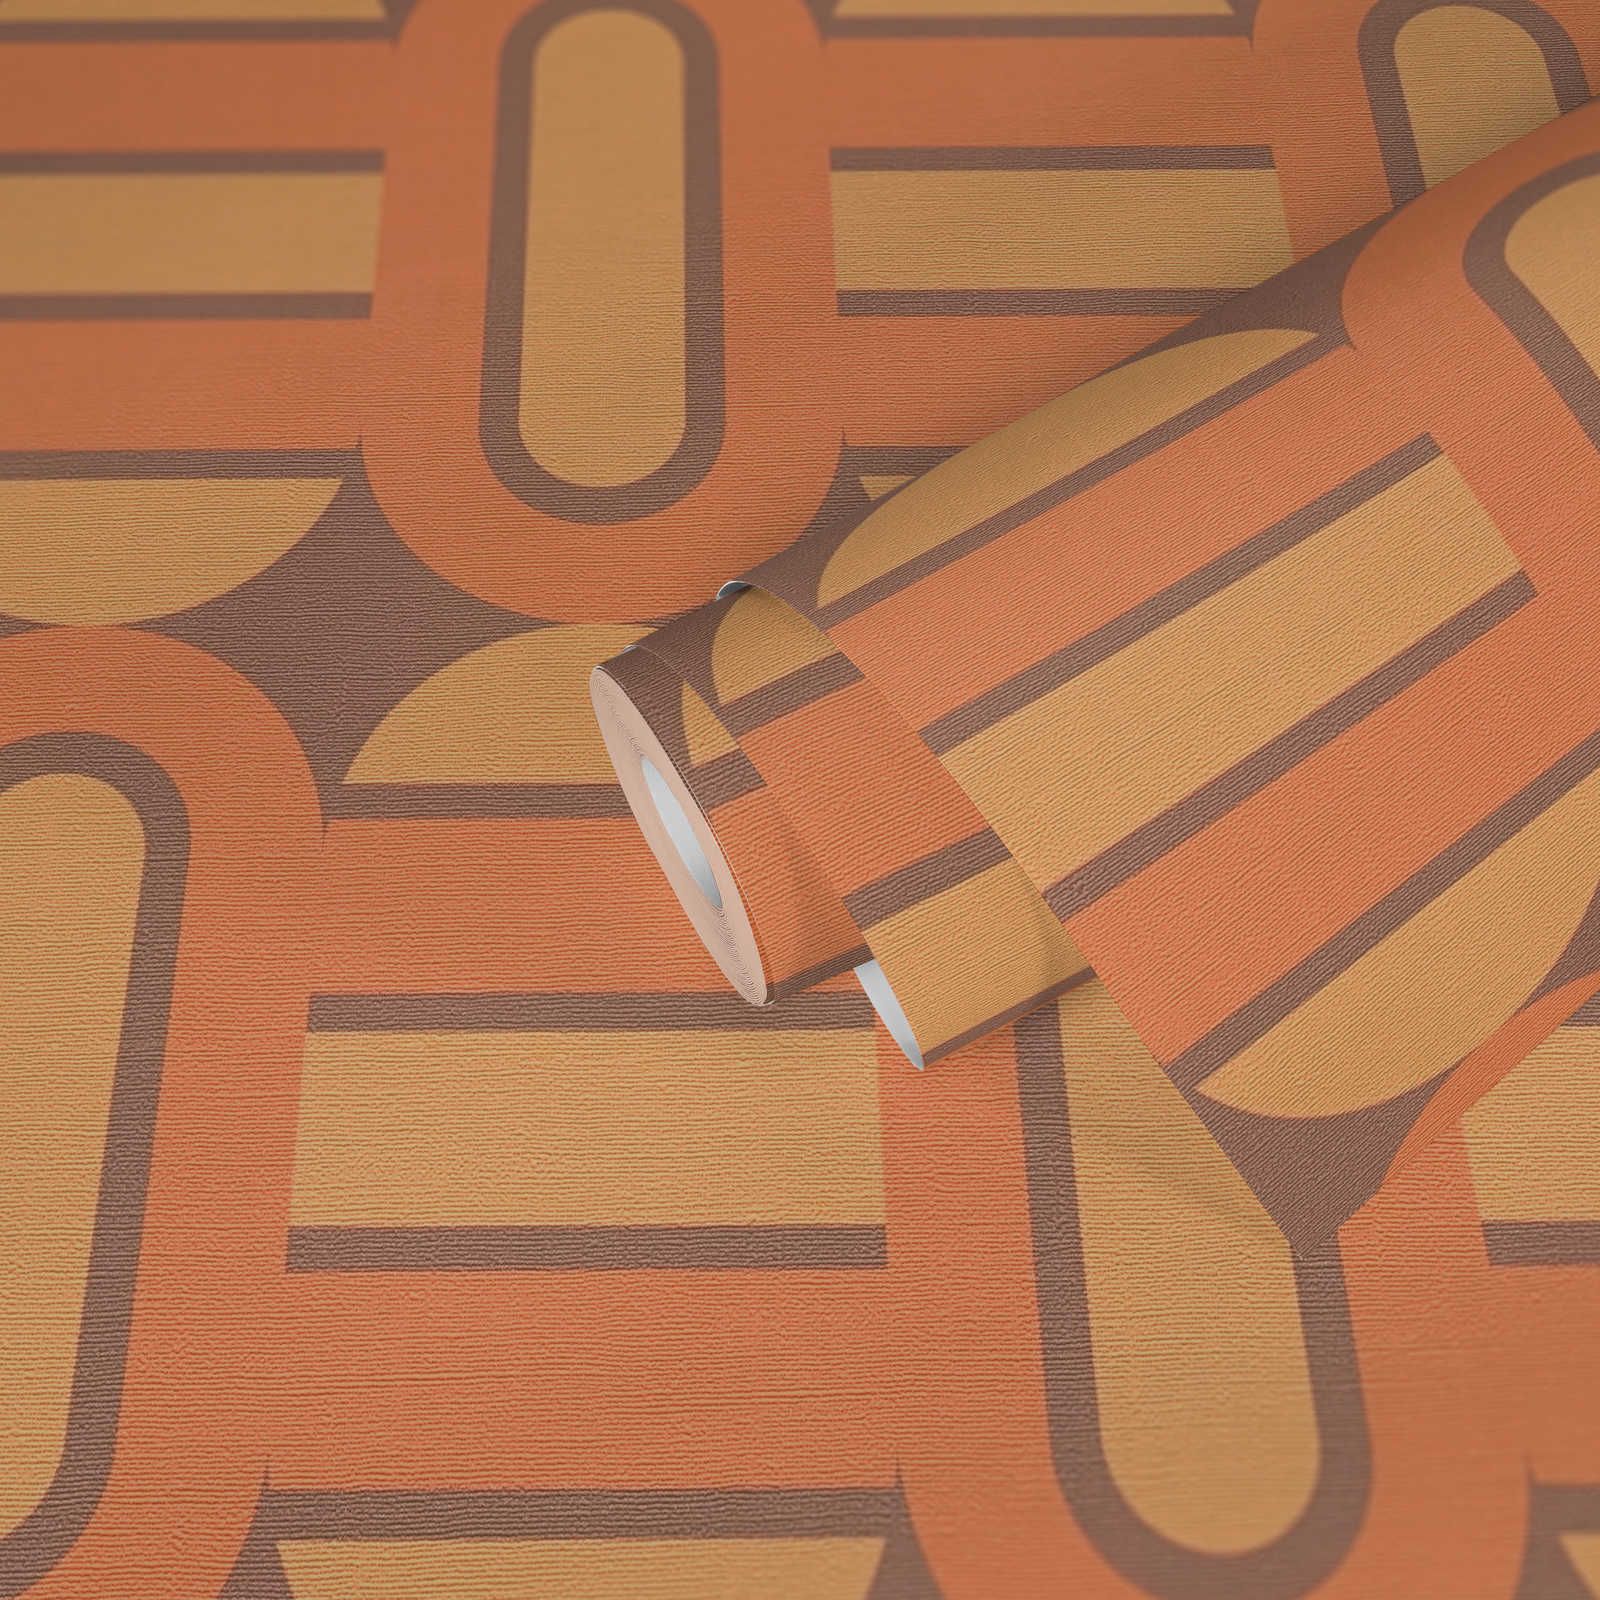             papier peint en papier intissé rétro décoré d'ovales et de barres aux couleurs chaudes - marron, jaune, orange
        